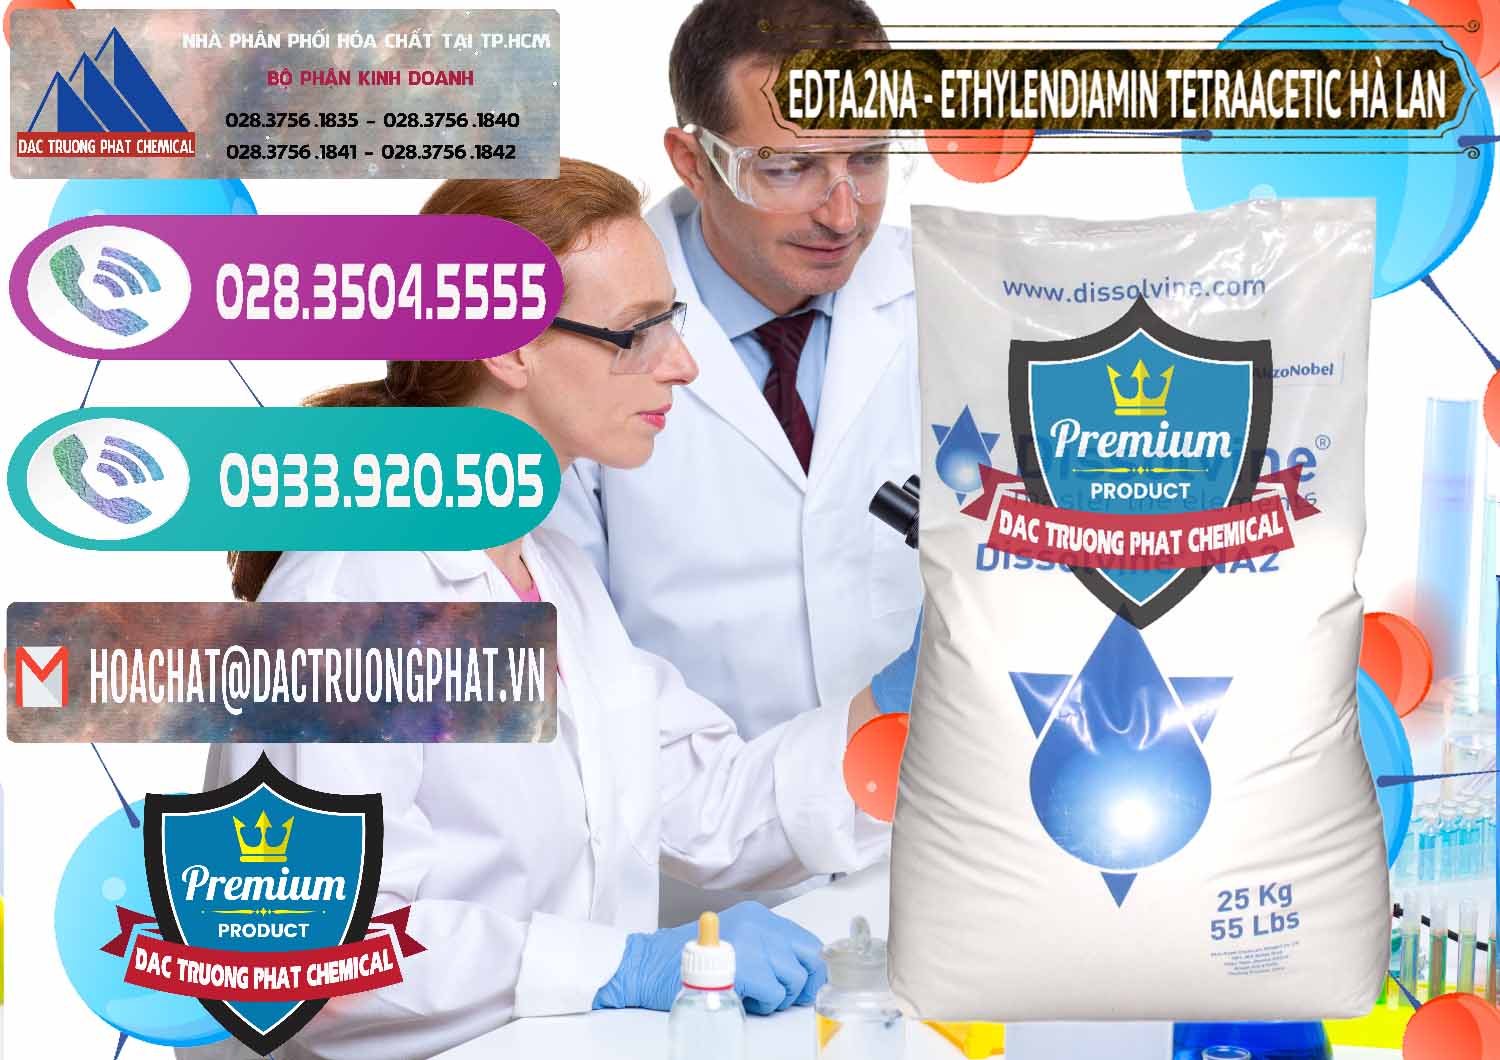 Nơi chuyên kinh doanh _ bán EDTA.2NA - Ethylendiamin Tetraacetic Dissolvine Hà Lan Netherlands - 0064 - Nơi chuyên cung cấp & bán hóa chất tại TP.HCM - hoachatxulynuoc.com